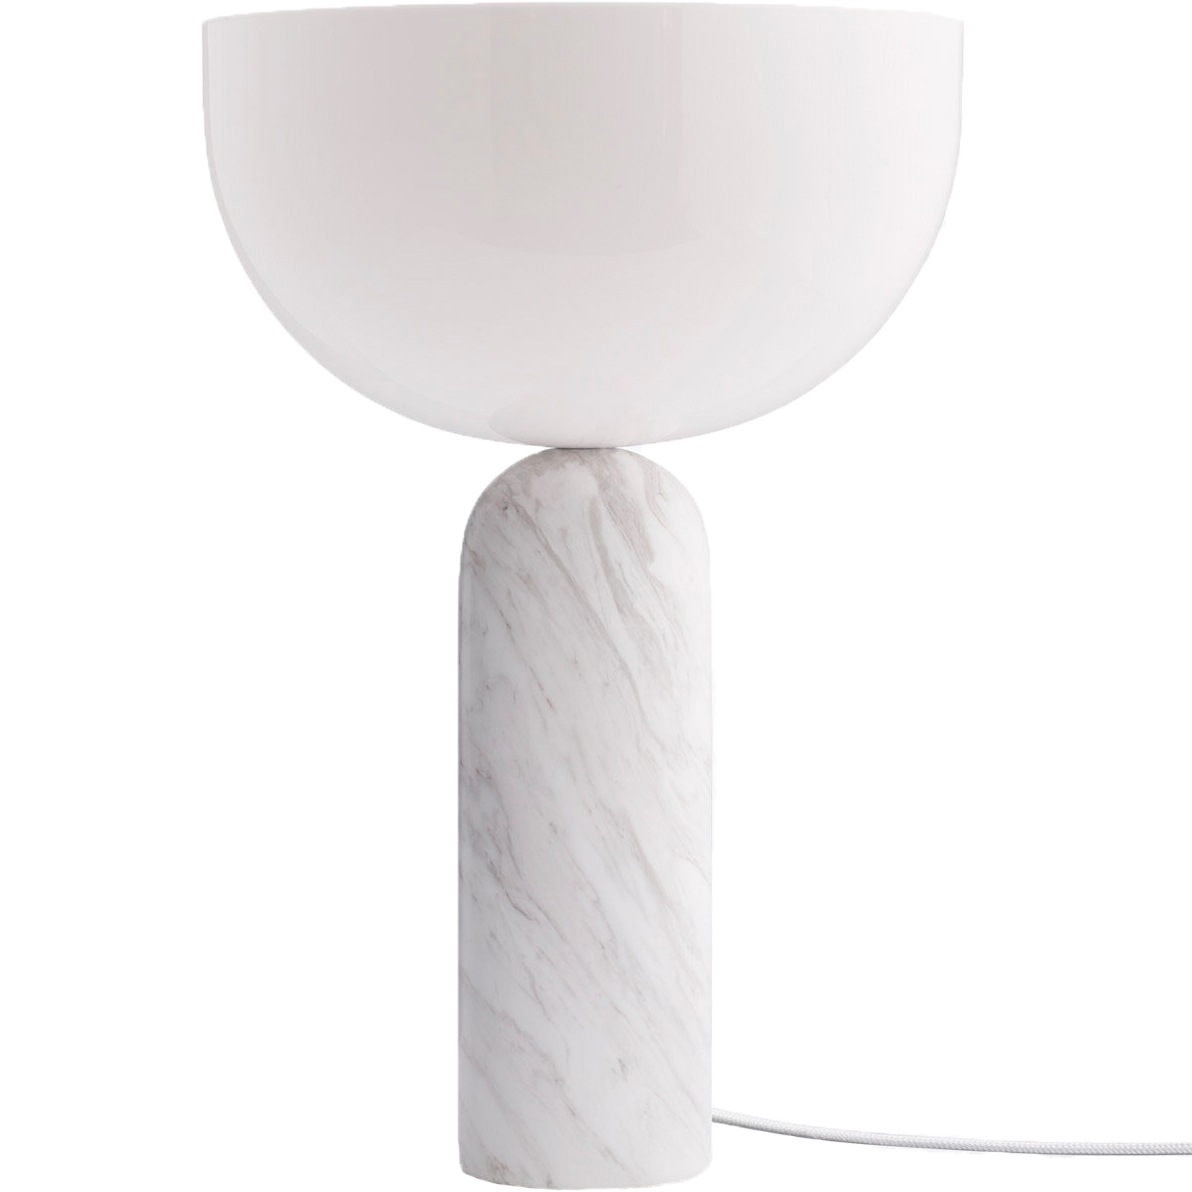 Kizu Table Lamp Large, White Marble